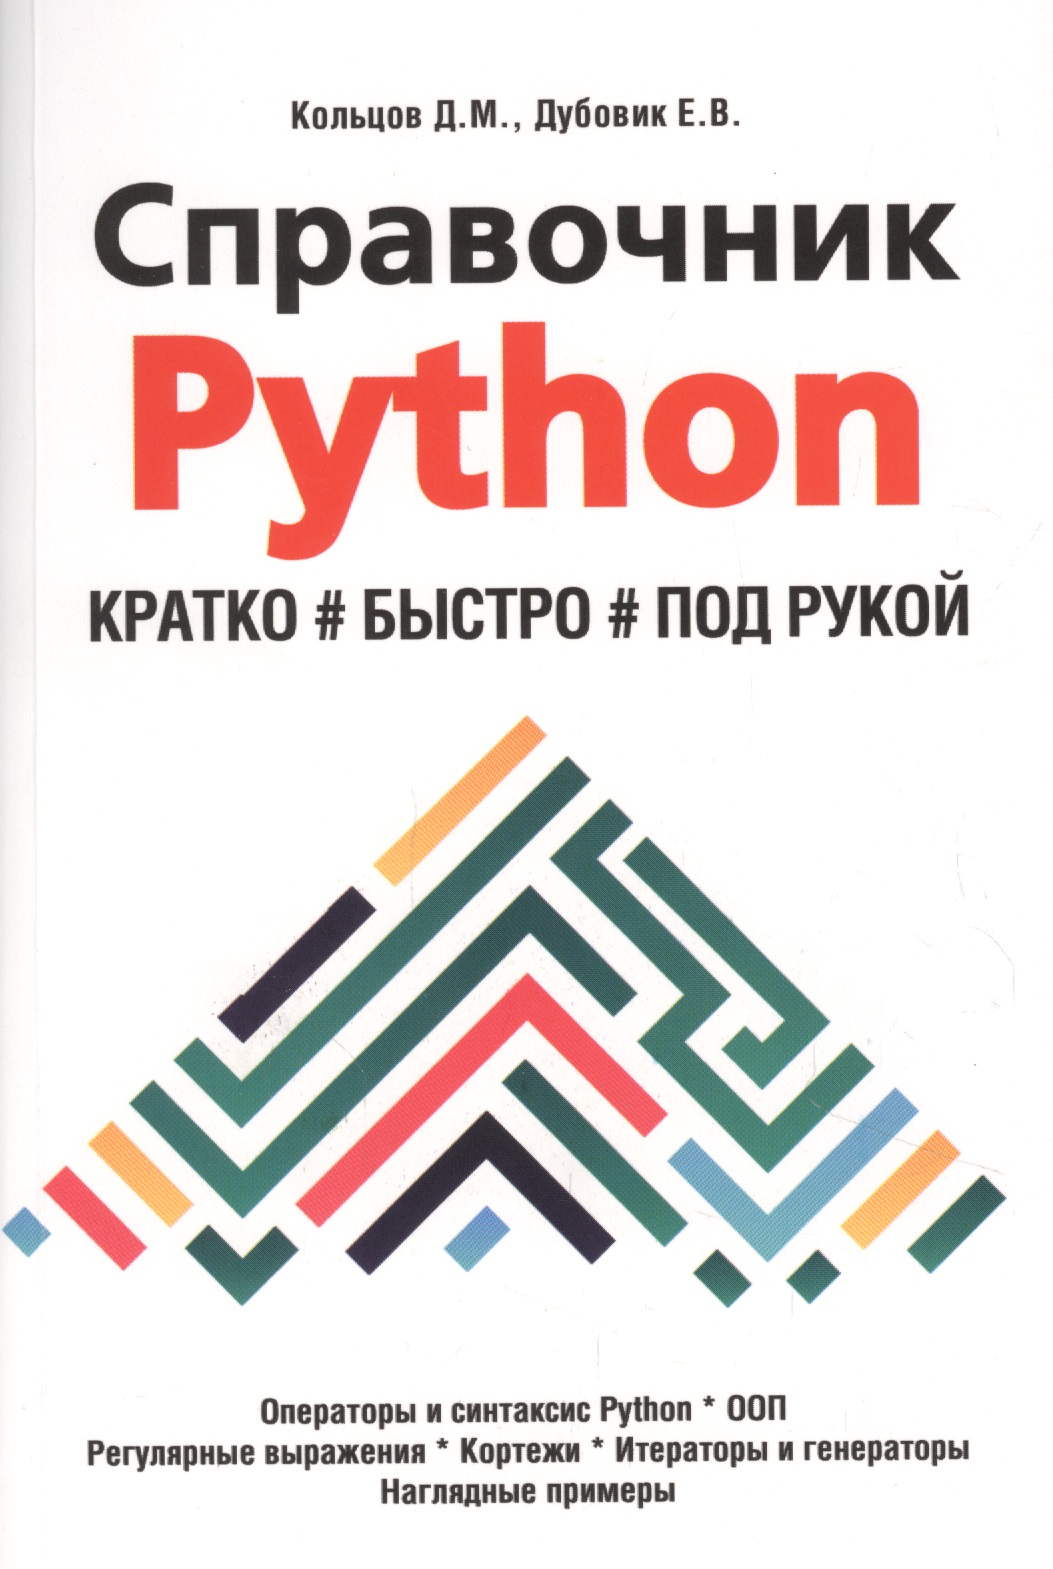 кольцов д python создаем программы и игры Кольцов Д. М. Справочник PYTHON. Кратко, быстро, под рукой